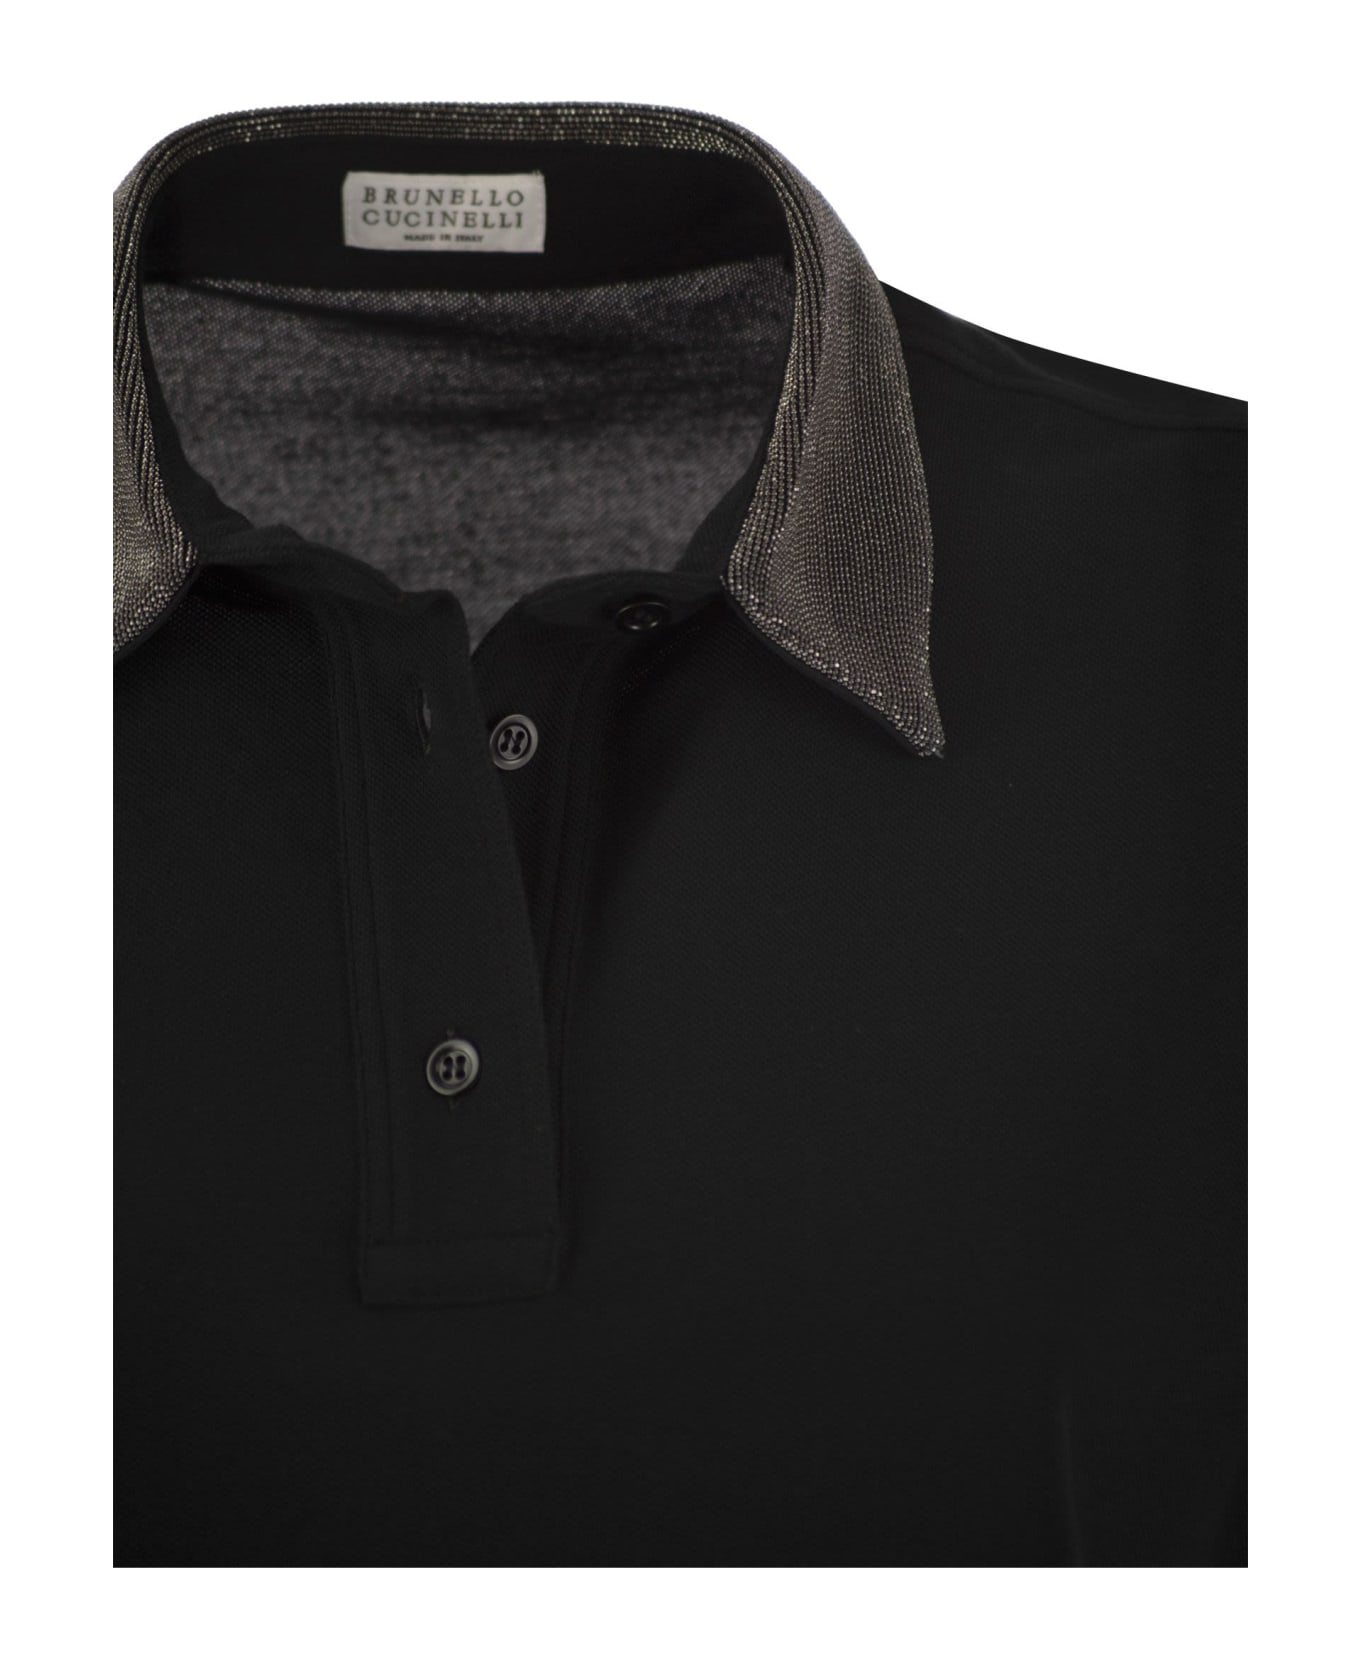 Brunello Cucinelli Polo Shirt - Nero ポロシャツ